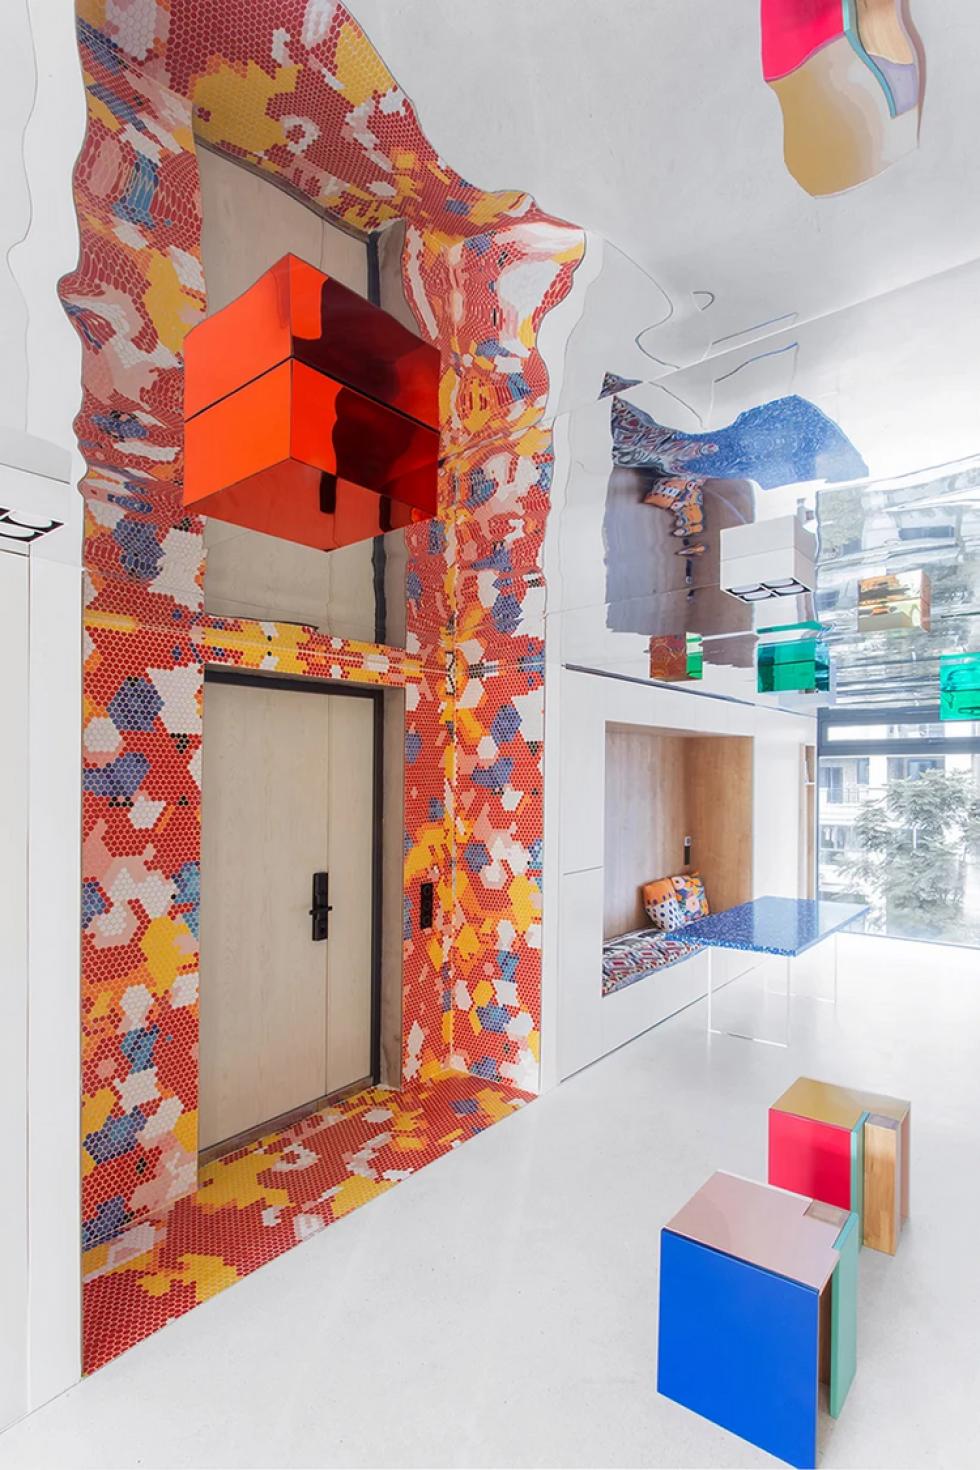 Egyedi belsőépítészet: színes mozaikcsempék és tükrös mennyezet dobja fel a modern kínai lakást